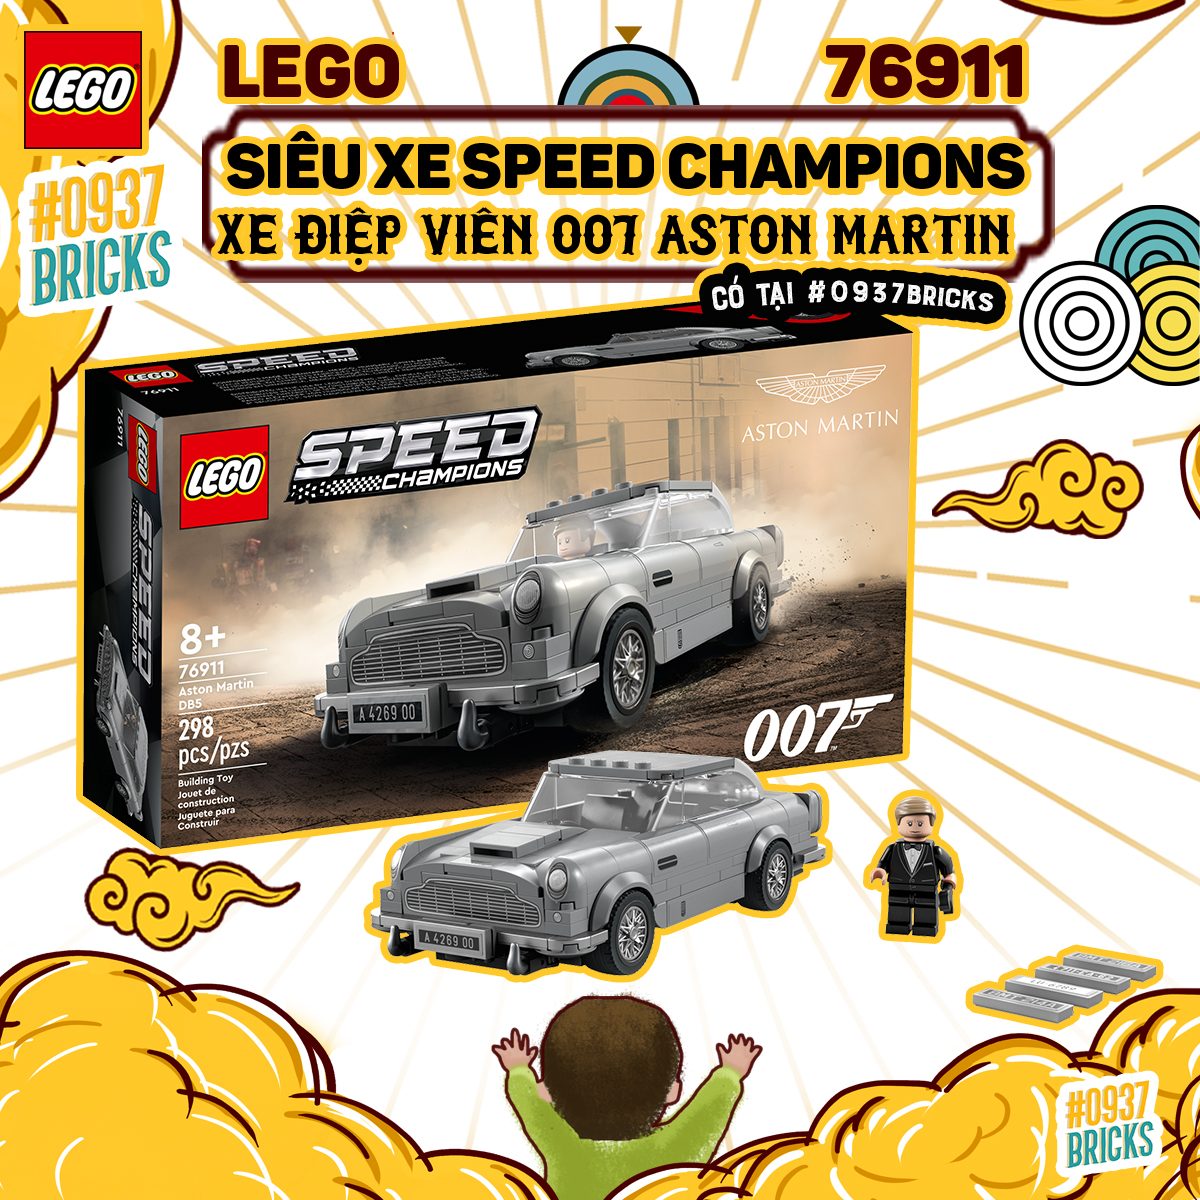 CÓ SẴN LEGO 76911 GIAO HỎA TỐC Speed Champions 007 Aston Martin DB5 SIÊU